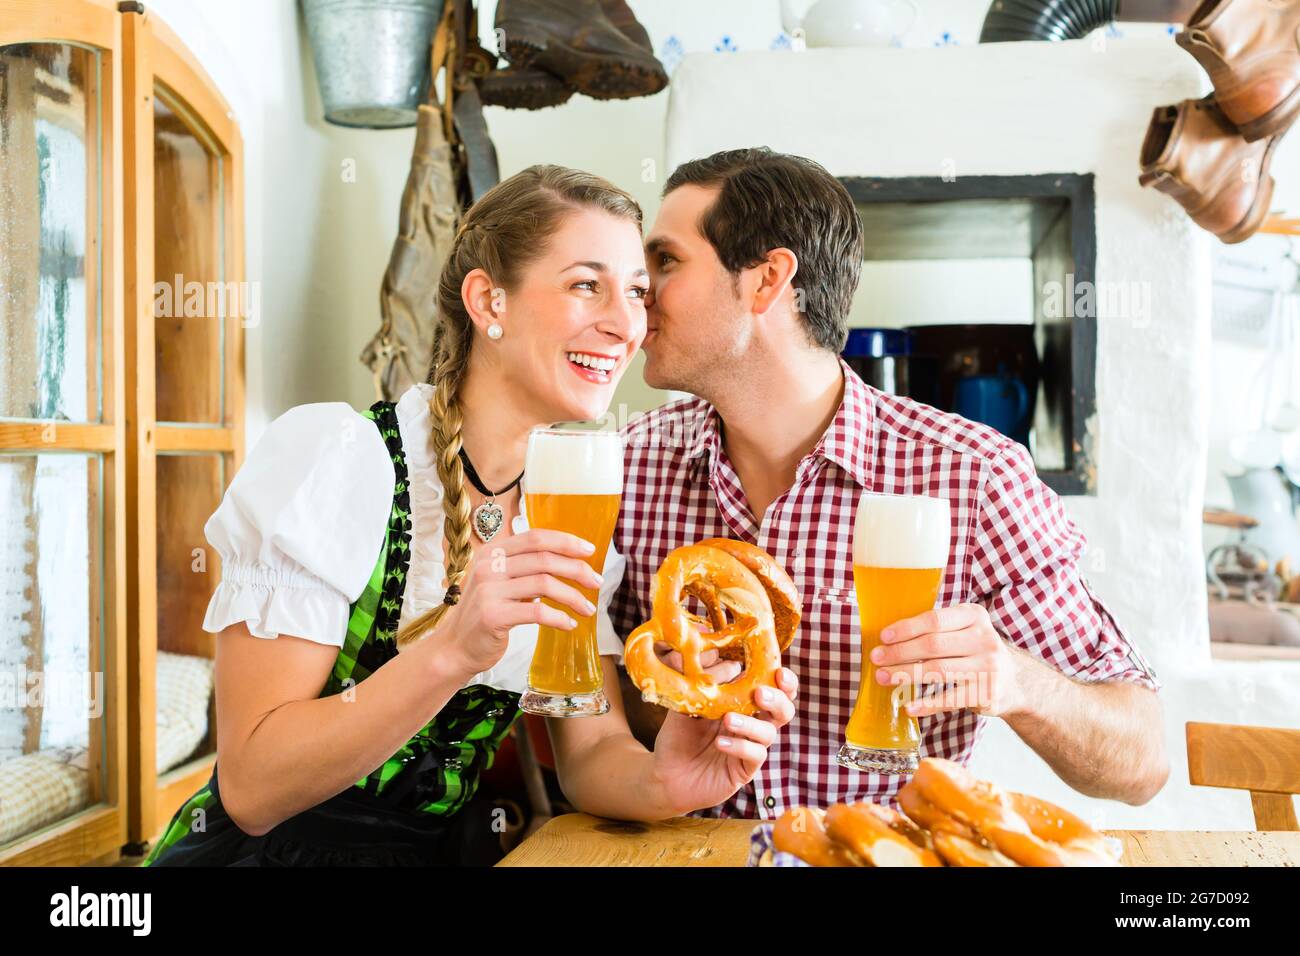 Bayerischen paar tragen traditionelle Kleidung, flirten und trinken Bier im  restaurant Stockfotografie - Alamy